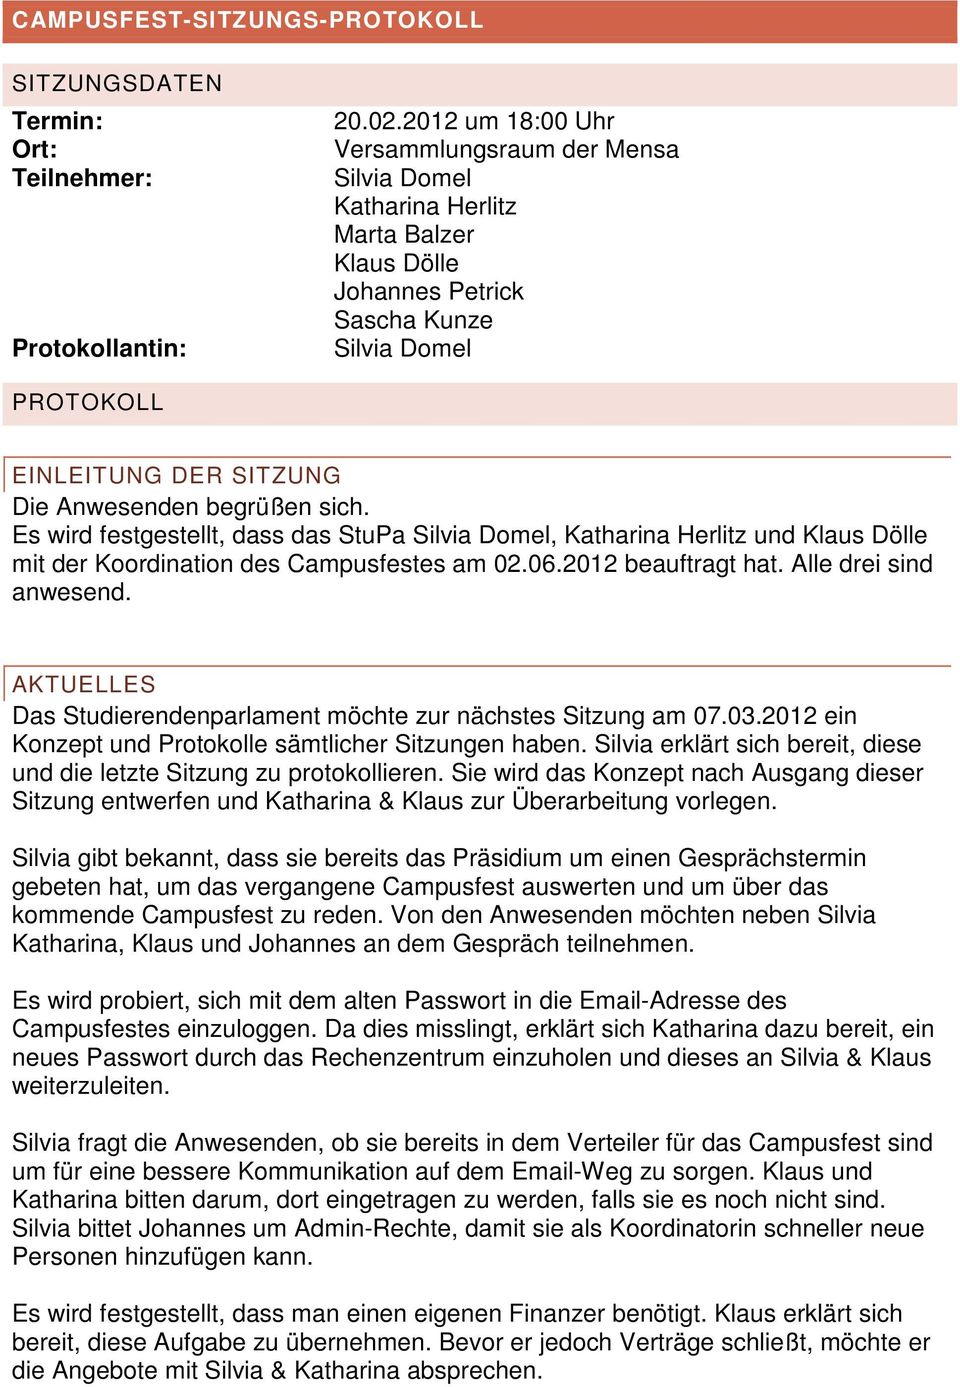 begrüßen sich. Es wird festgestellt, dass das StuPa Silvia Domel, Katharina Herlitz und Klaus Dölle mit der Koordination des Campusfestes am 02.06.2012 beauftragt hat. Alle drei sind anwesend.